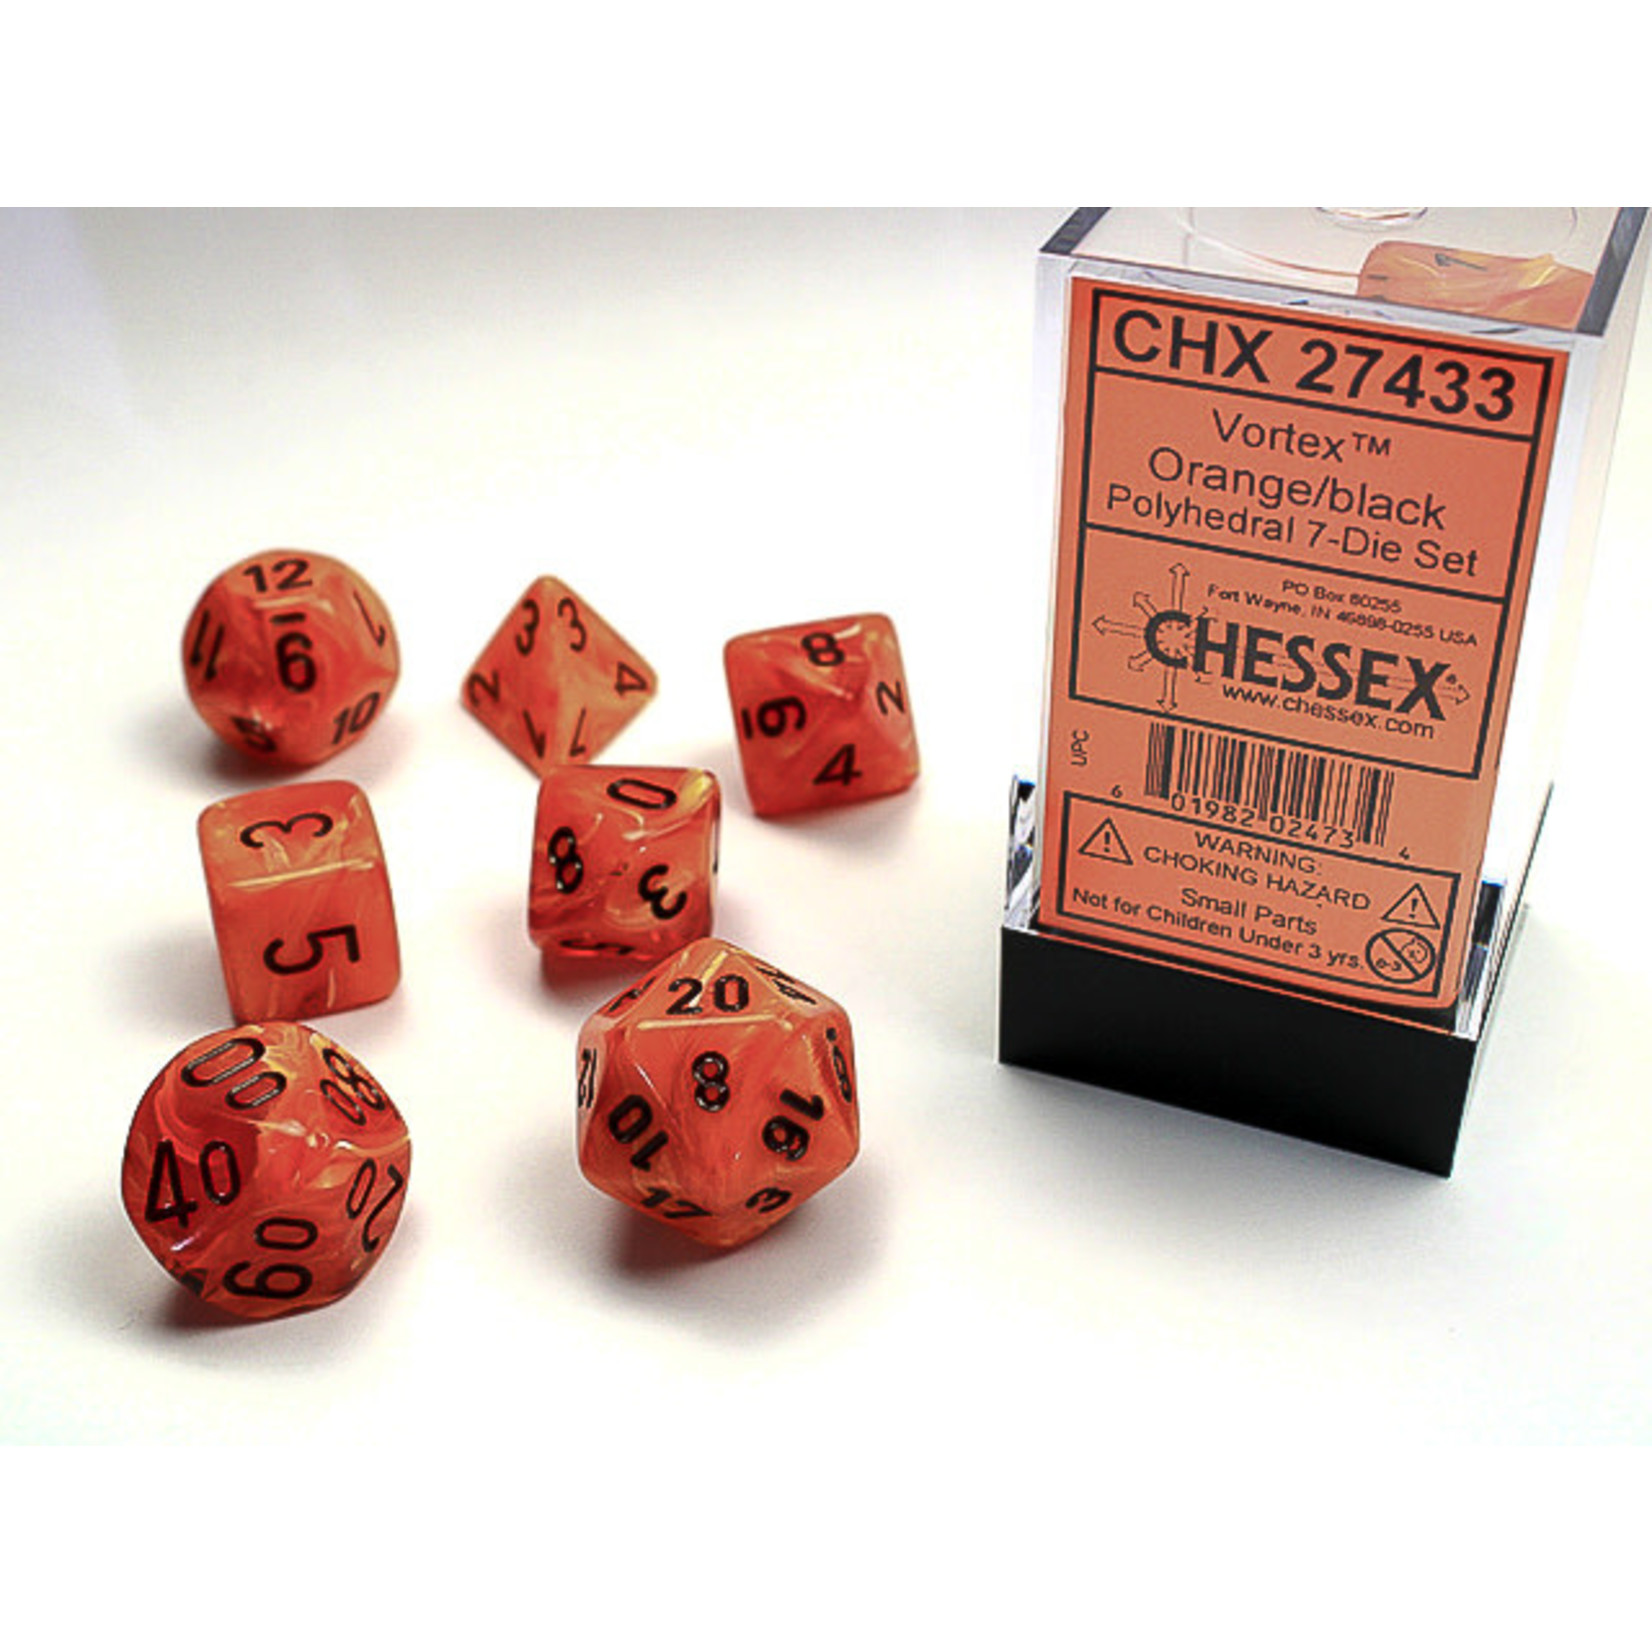 Chessex Dice RPG 27433 7pc Vortex Orange/Black